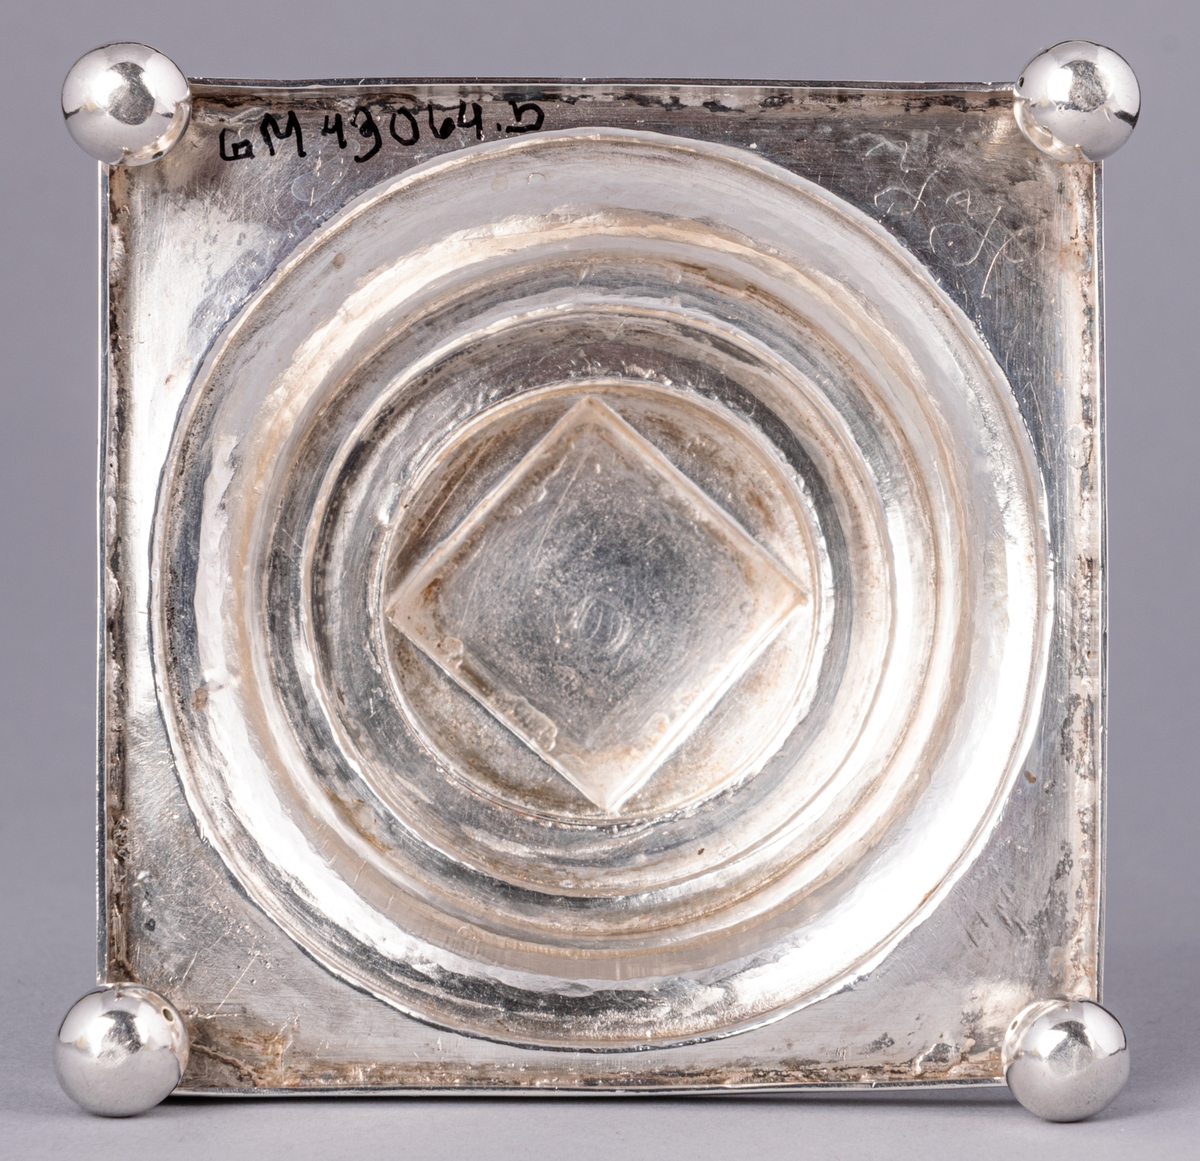 En av ett par gustavianska ljusstakar i silver stämplade Anders Dunderberg, Gävle 1800. Stram åttaformat ben med avtagbar manschett, rektangulär terrasserad fot med kulfötter. Mästarstämpel på fotens sida: S2 tre kronor G A.DB.